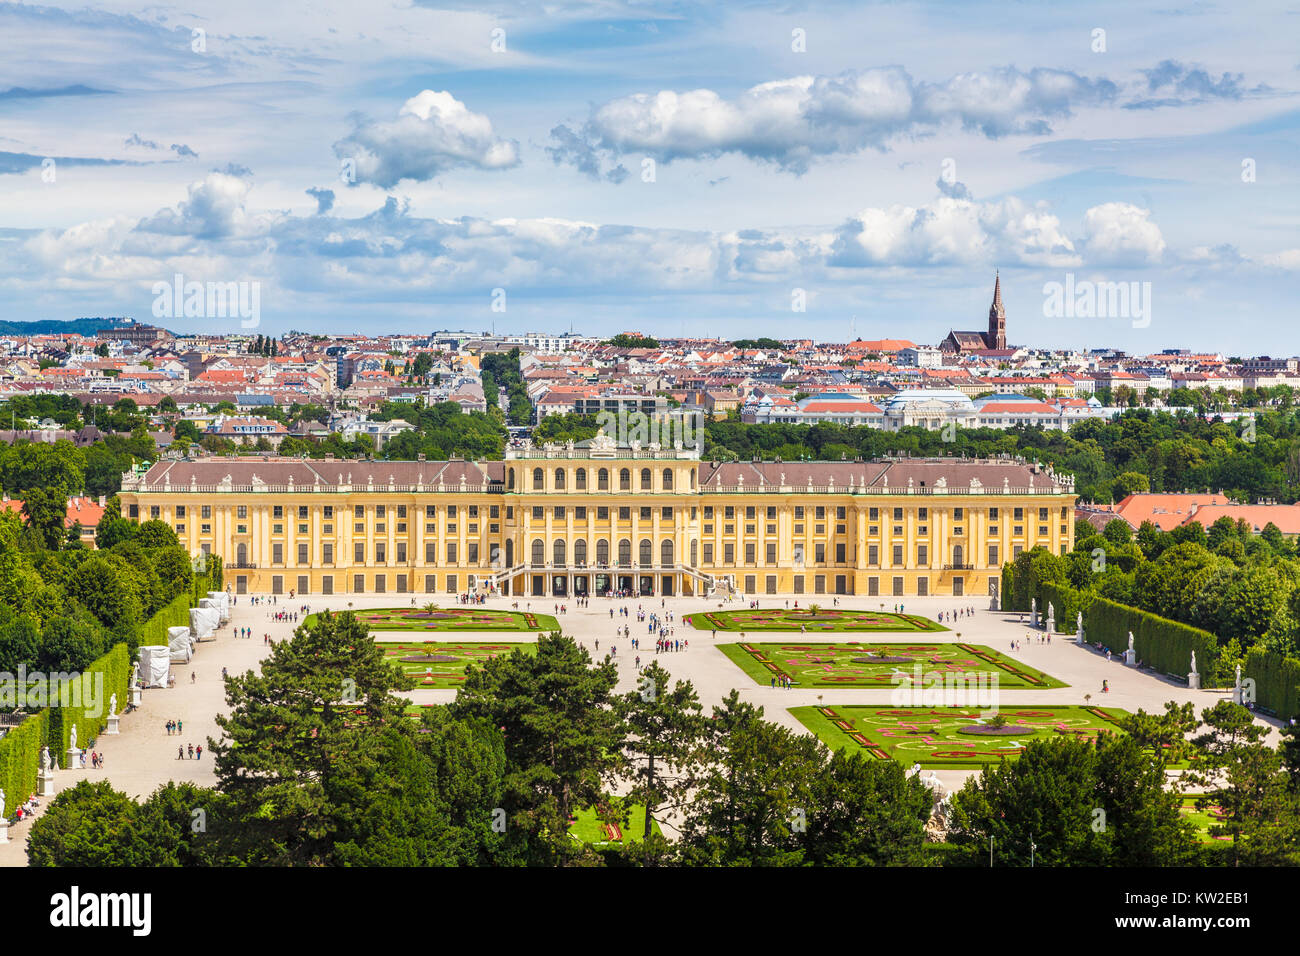 Klassische Ansicht des berühmten Schloss Schönbrunn mit malerischen großen Parterres Garten an einem schönen sonnigen Tag mit blauem Himmel und Wolken im Sommer, Wien, Österreich Stockfoto